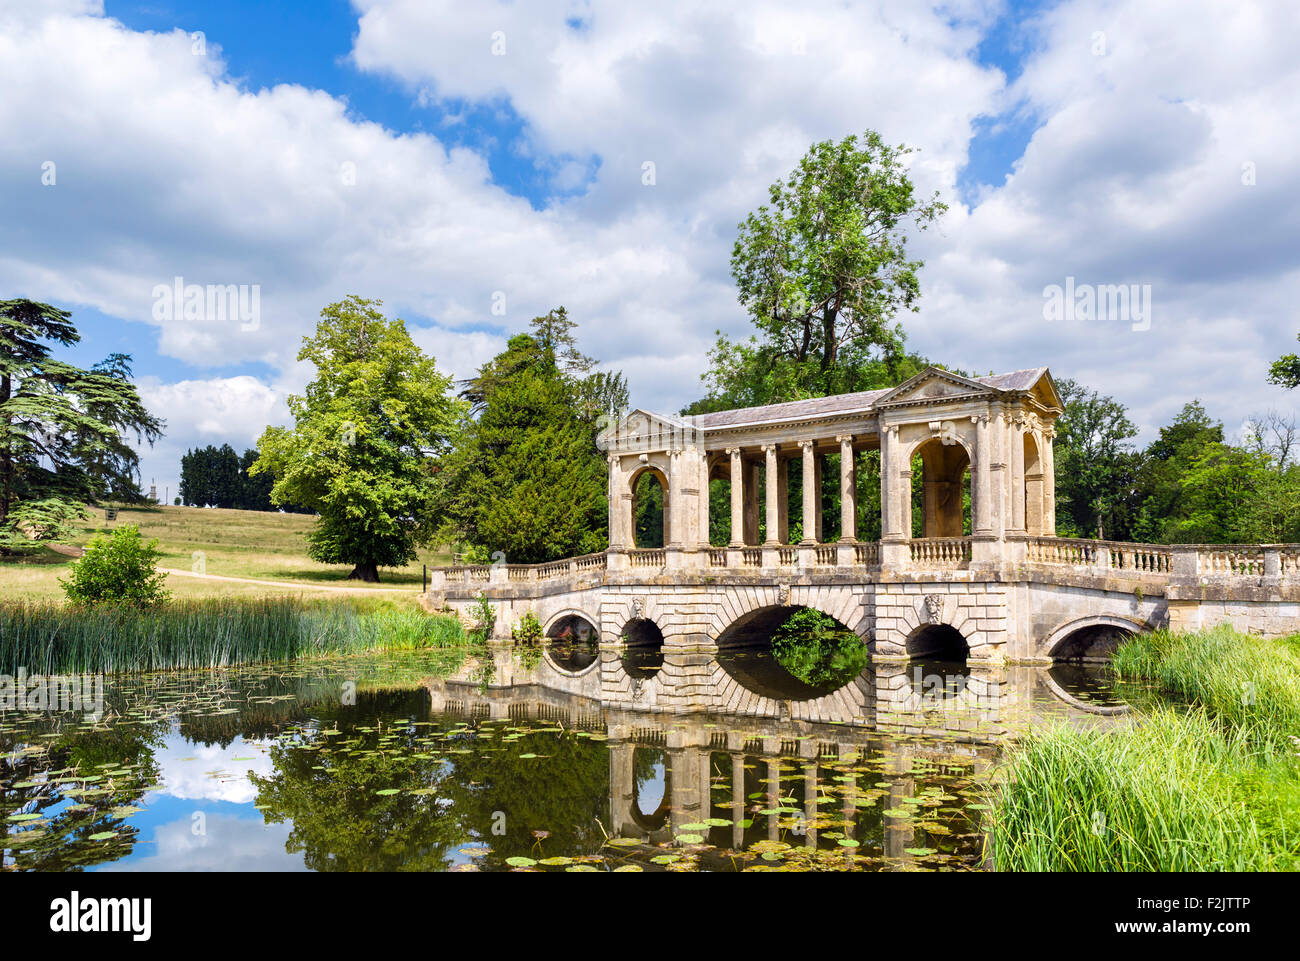 Le pont palladien, Stowe paysage de jardins, Stowe House, dans le Buckinghamshire, Angleterre, RU Banque D'Images